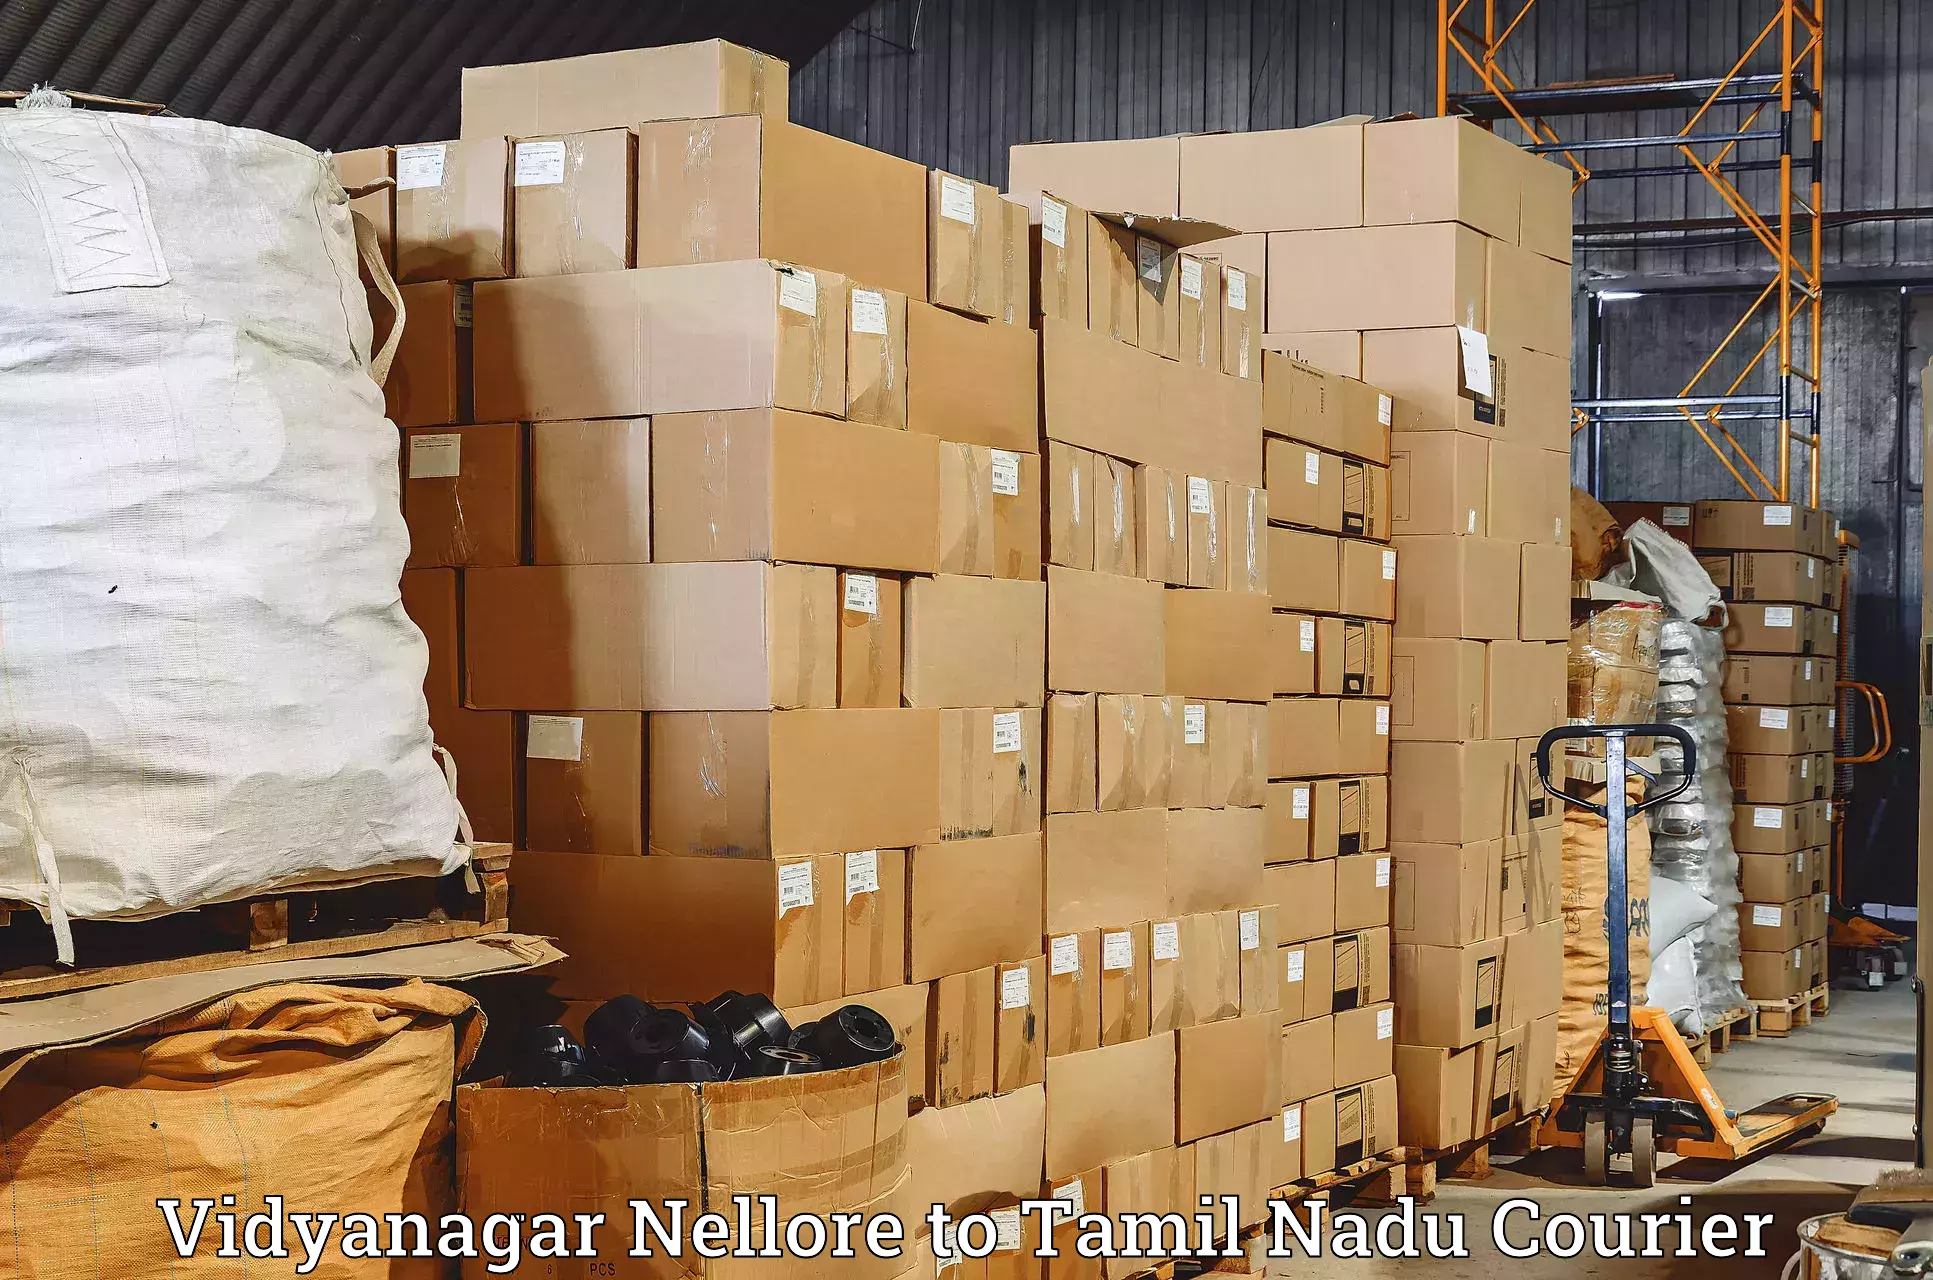 Reliable delivery network Vidyanagar Nellore to Mannargudi